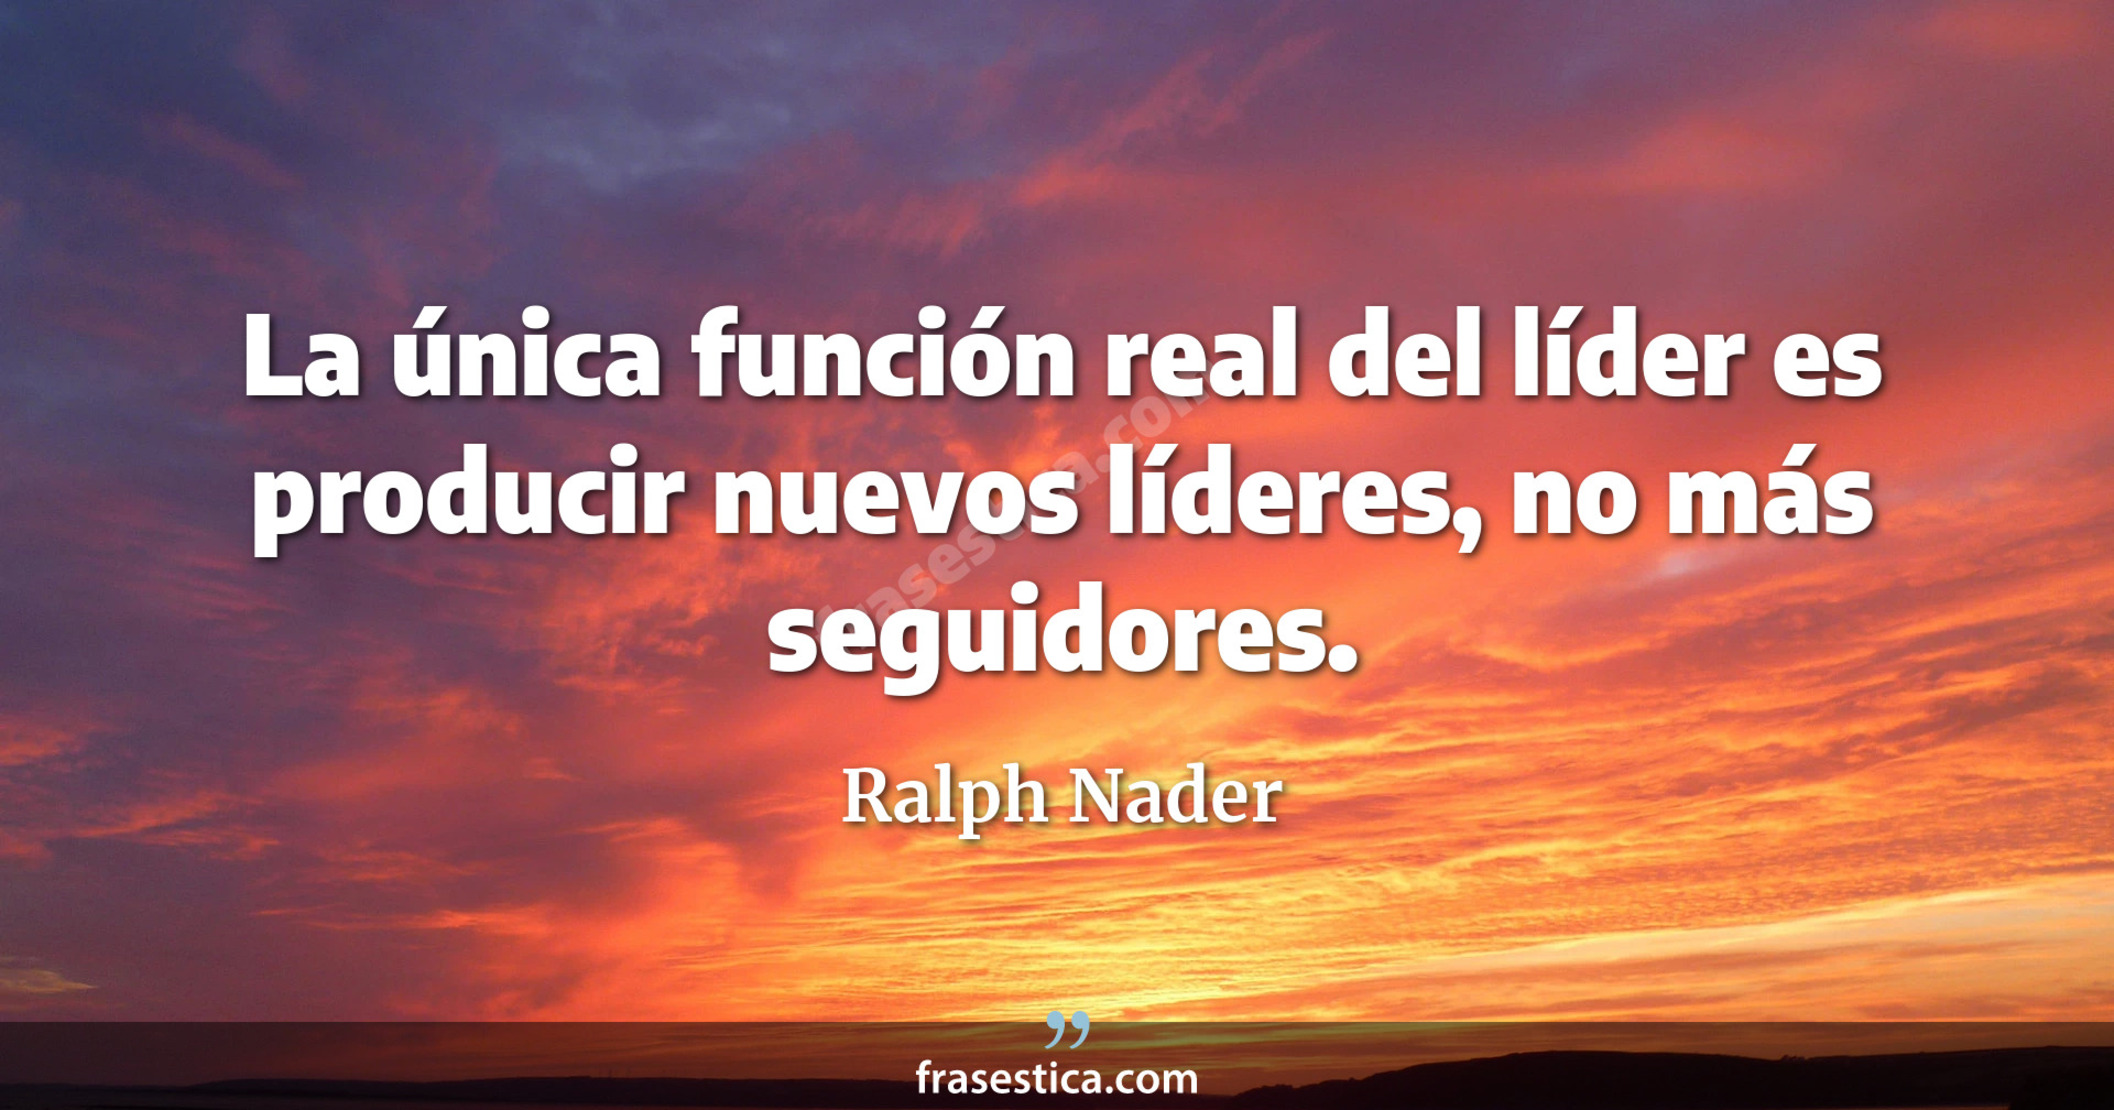 La única función real del líder es producir nuevos líderes, no más seguidores. - Ralph Nader